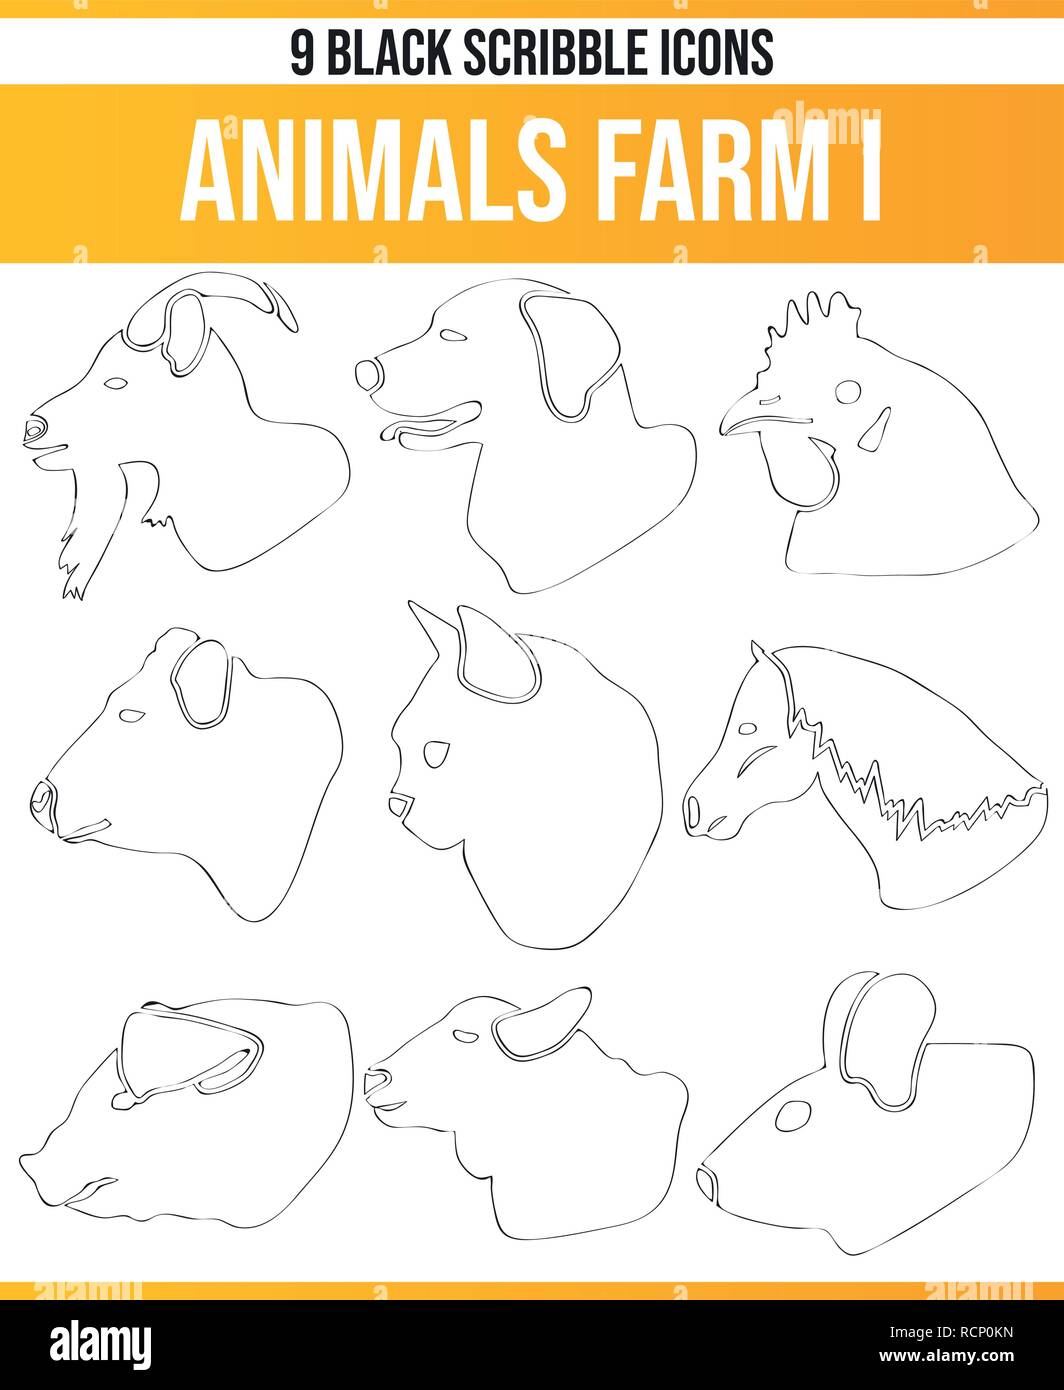 Schwarz Piktoramme/Icons auf Nutztiere. Dieses Icon Set ist perfekt für kreative Menschen und Designer, die das Thema der Bauernhof Tiere in Ihrem Diagramm benötigen Stock Vektor